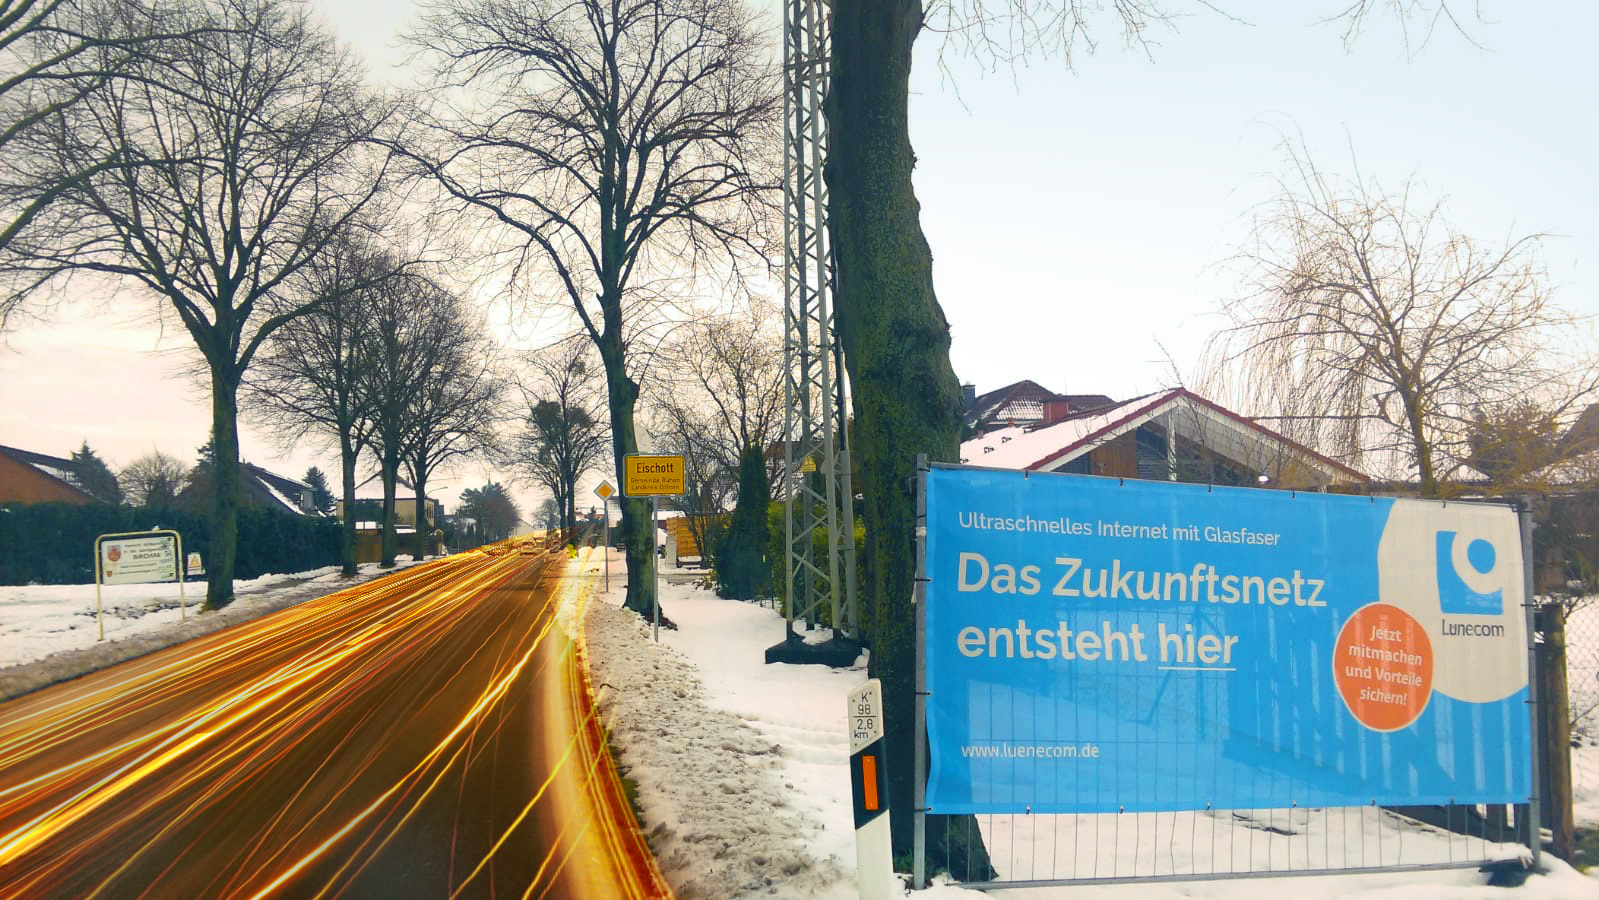 Buntes Lünecom Werbeplakat das im Winter am Strassenrand steht und vom neuen Glasfaser Angebot für Eischott berichtet.